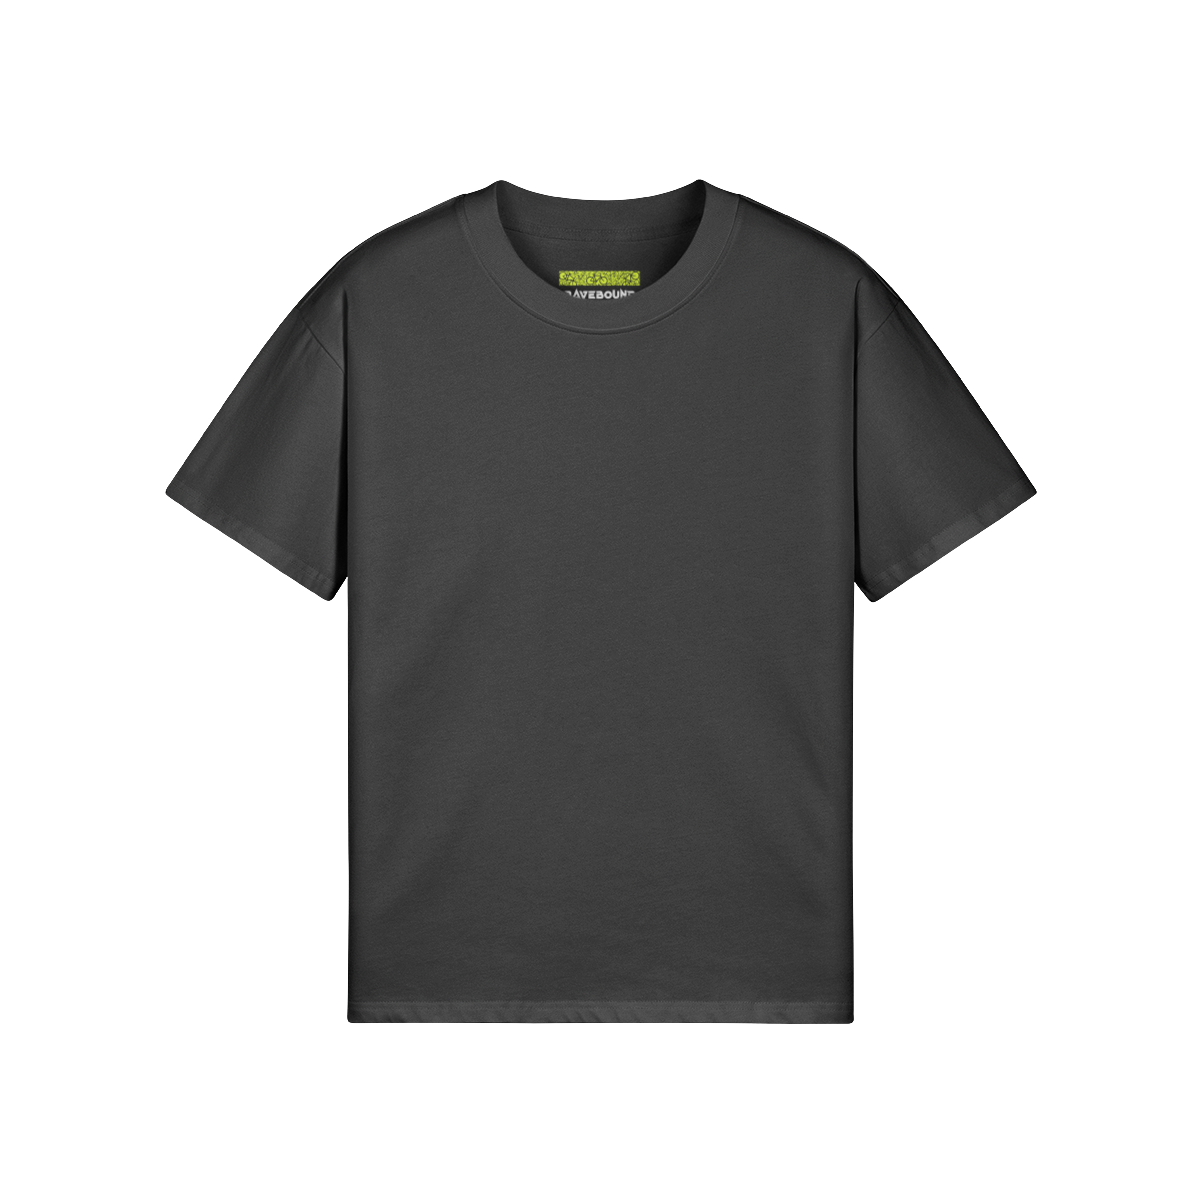 RAVE DAD ON DUTY (BACK PRINT) - Unisex Oversized T-shirt